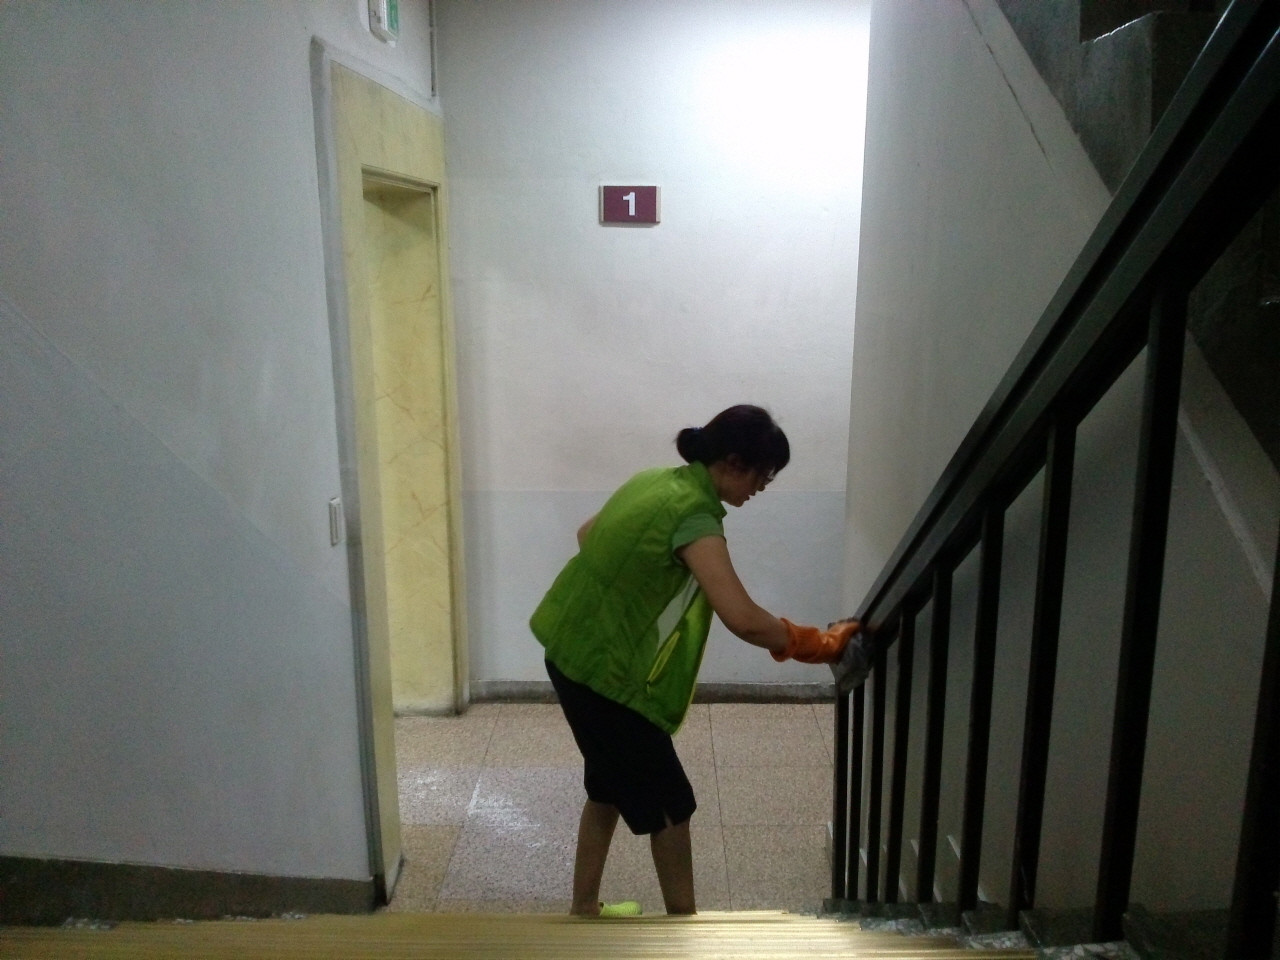 중앙도서관을 담당하는 청소노동자가 손걸레로 계단 난간을 닦고 있다. 그녀는 하루 두 번 출·퇴근한다.